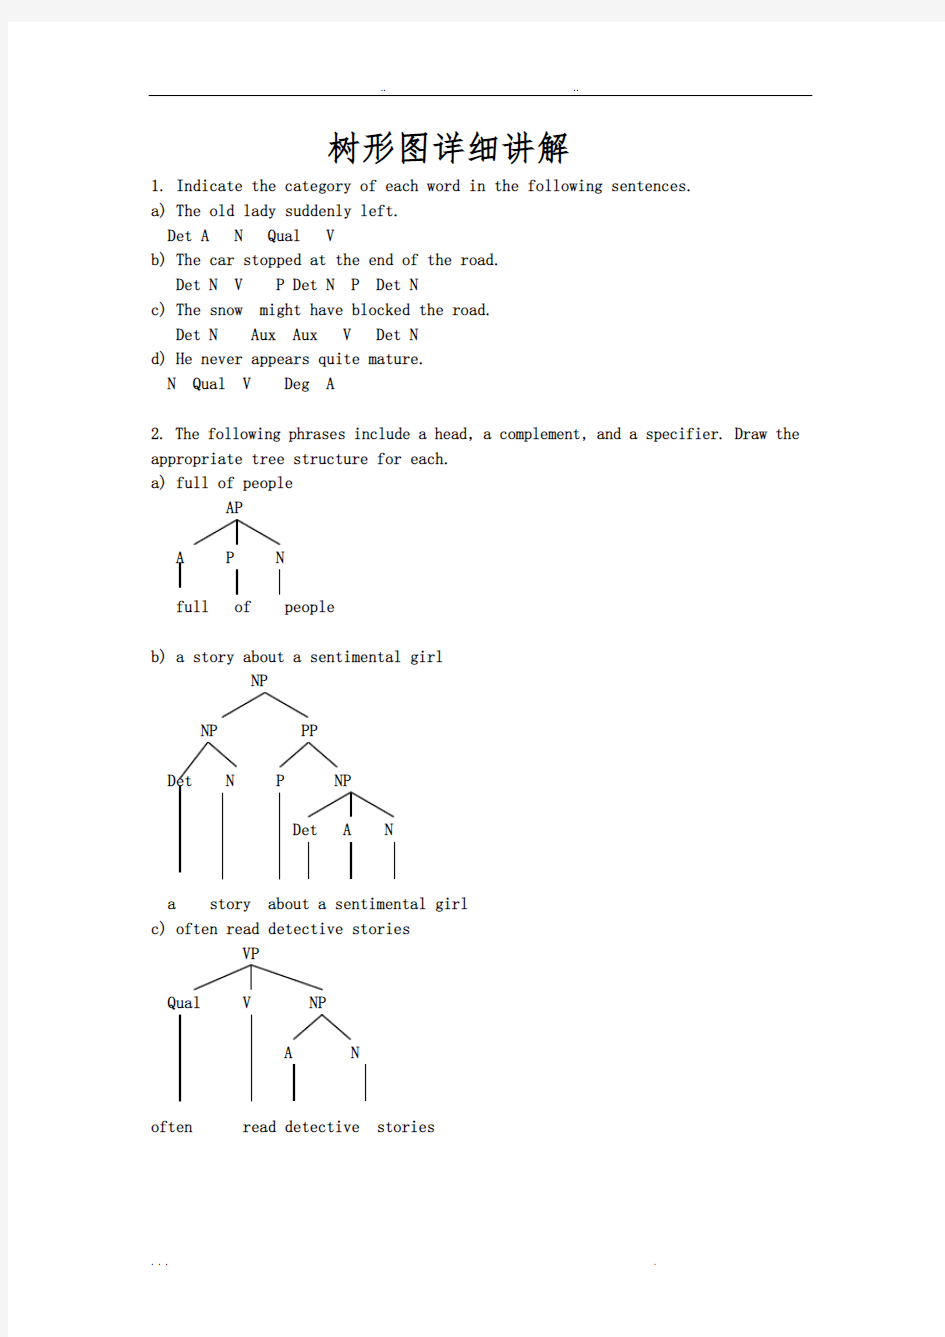 英语语言学树型图